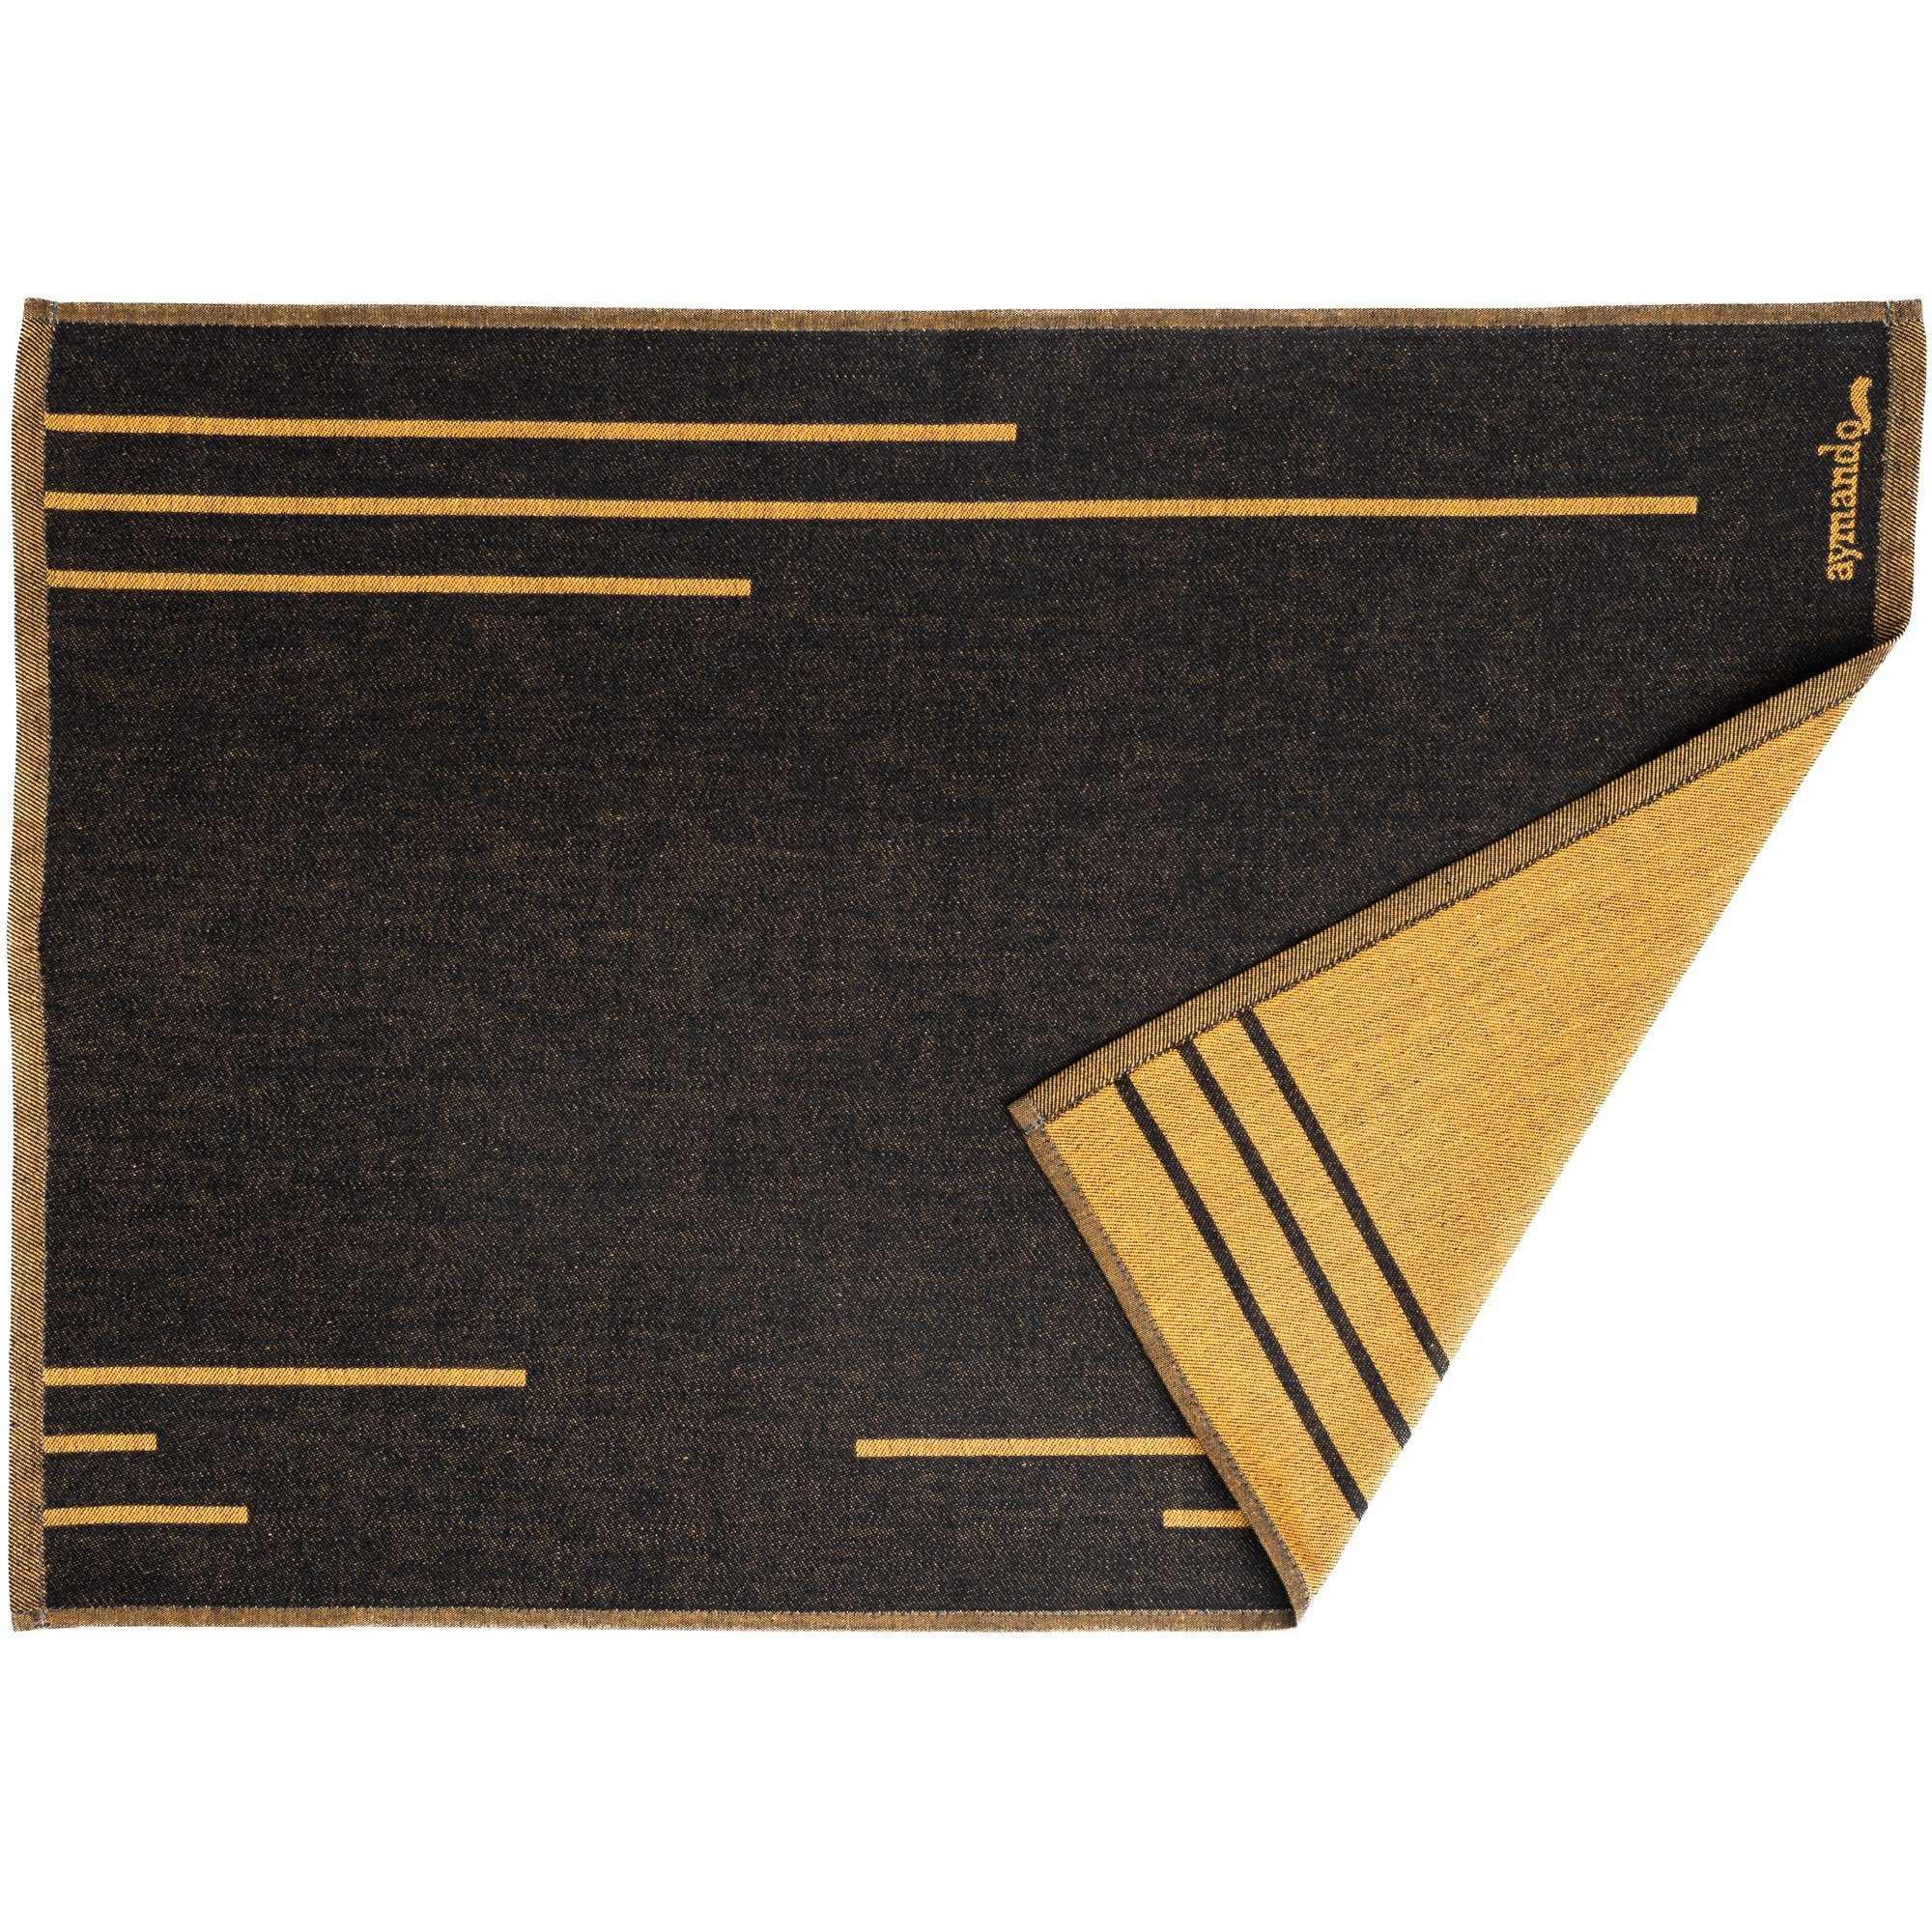 Aymando Lines, 50x70 Baumwolle), Ägyptische Geschirrtuch (Set, 3-tlg., cm Black-Gold